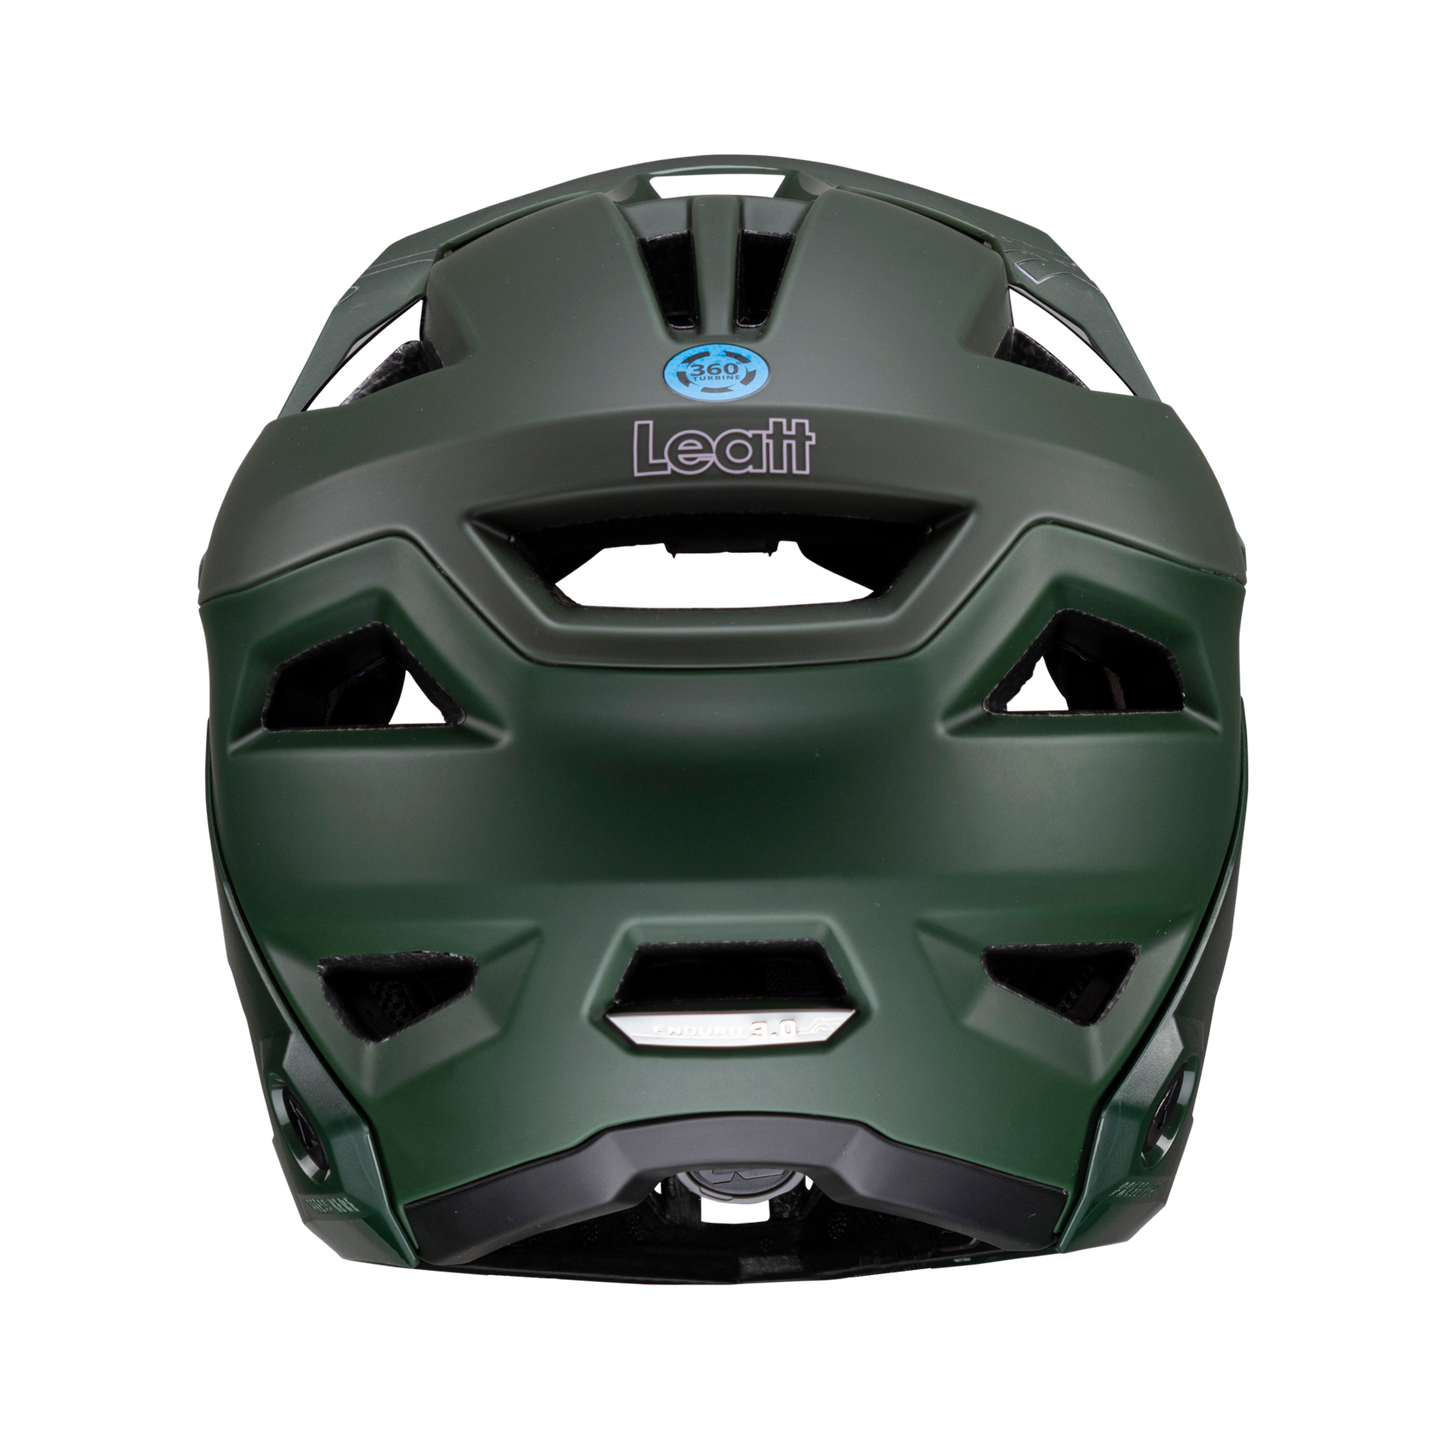 Helmet MTB Enduro 3.0  - Spinach